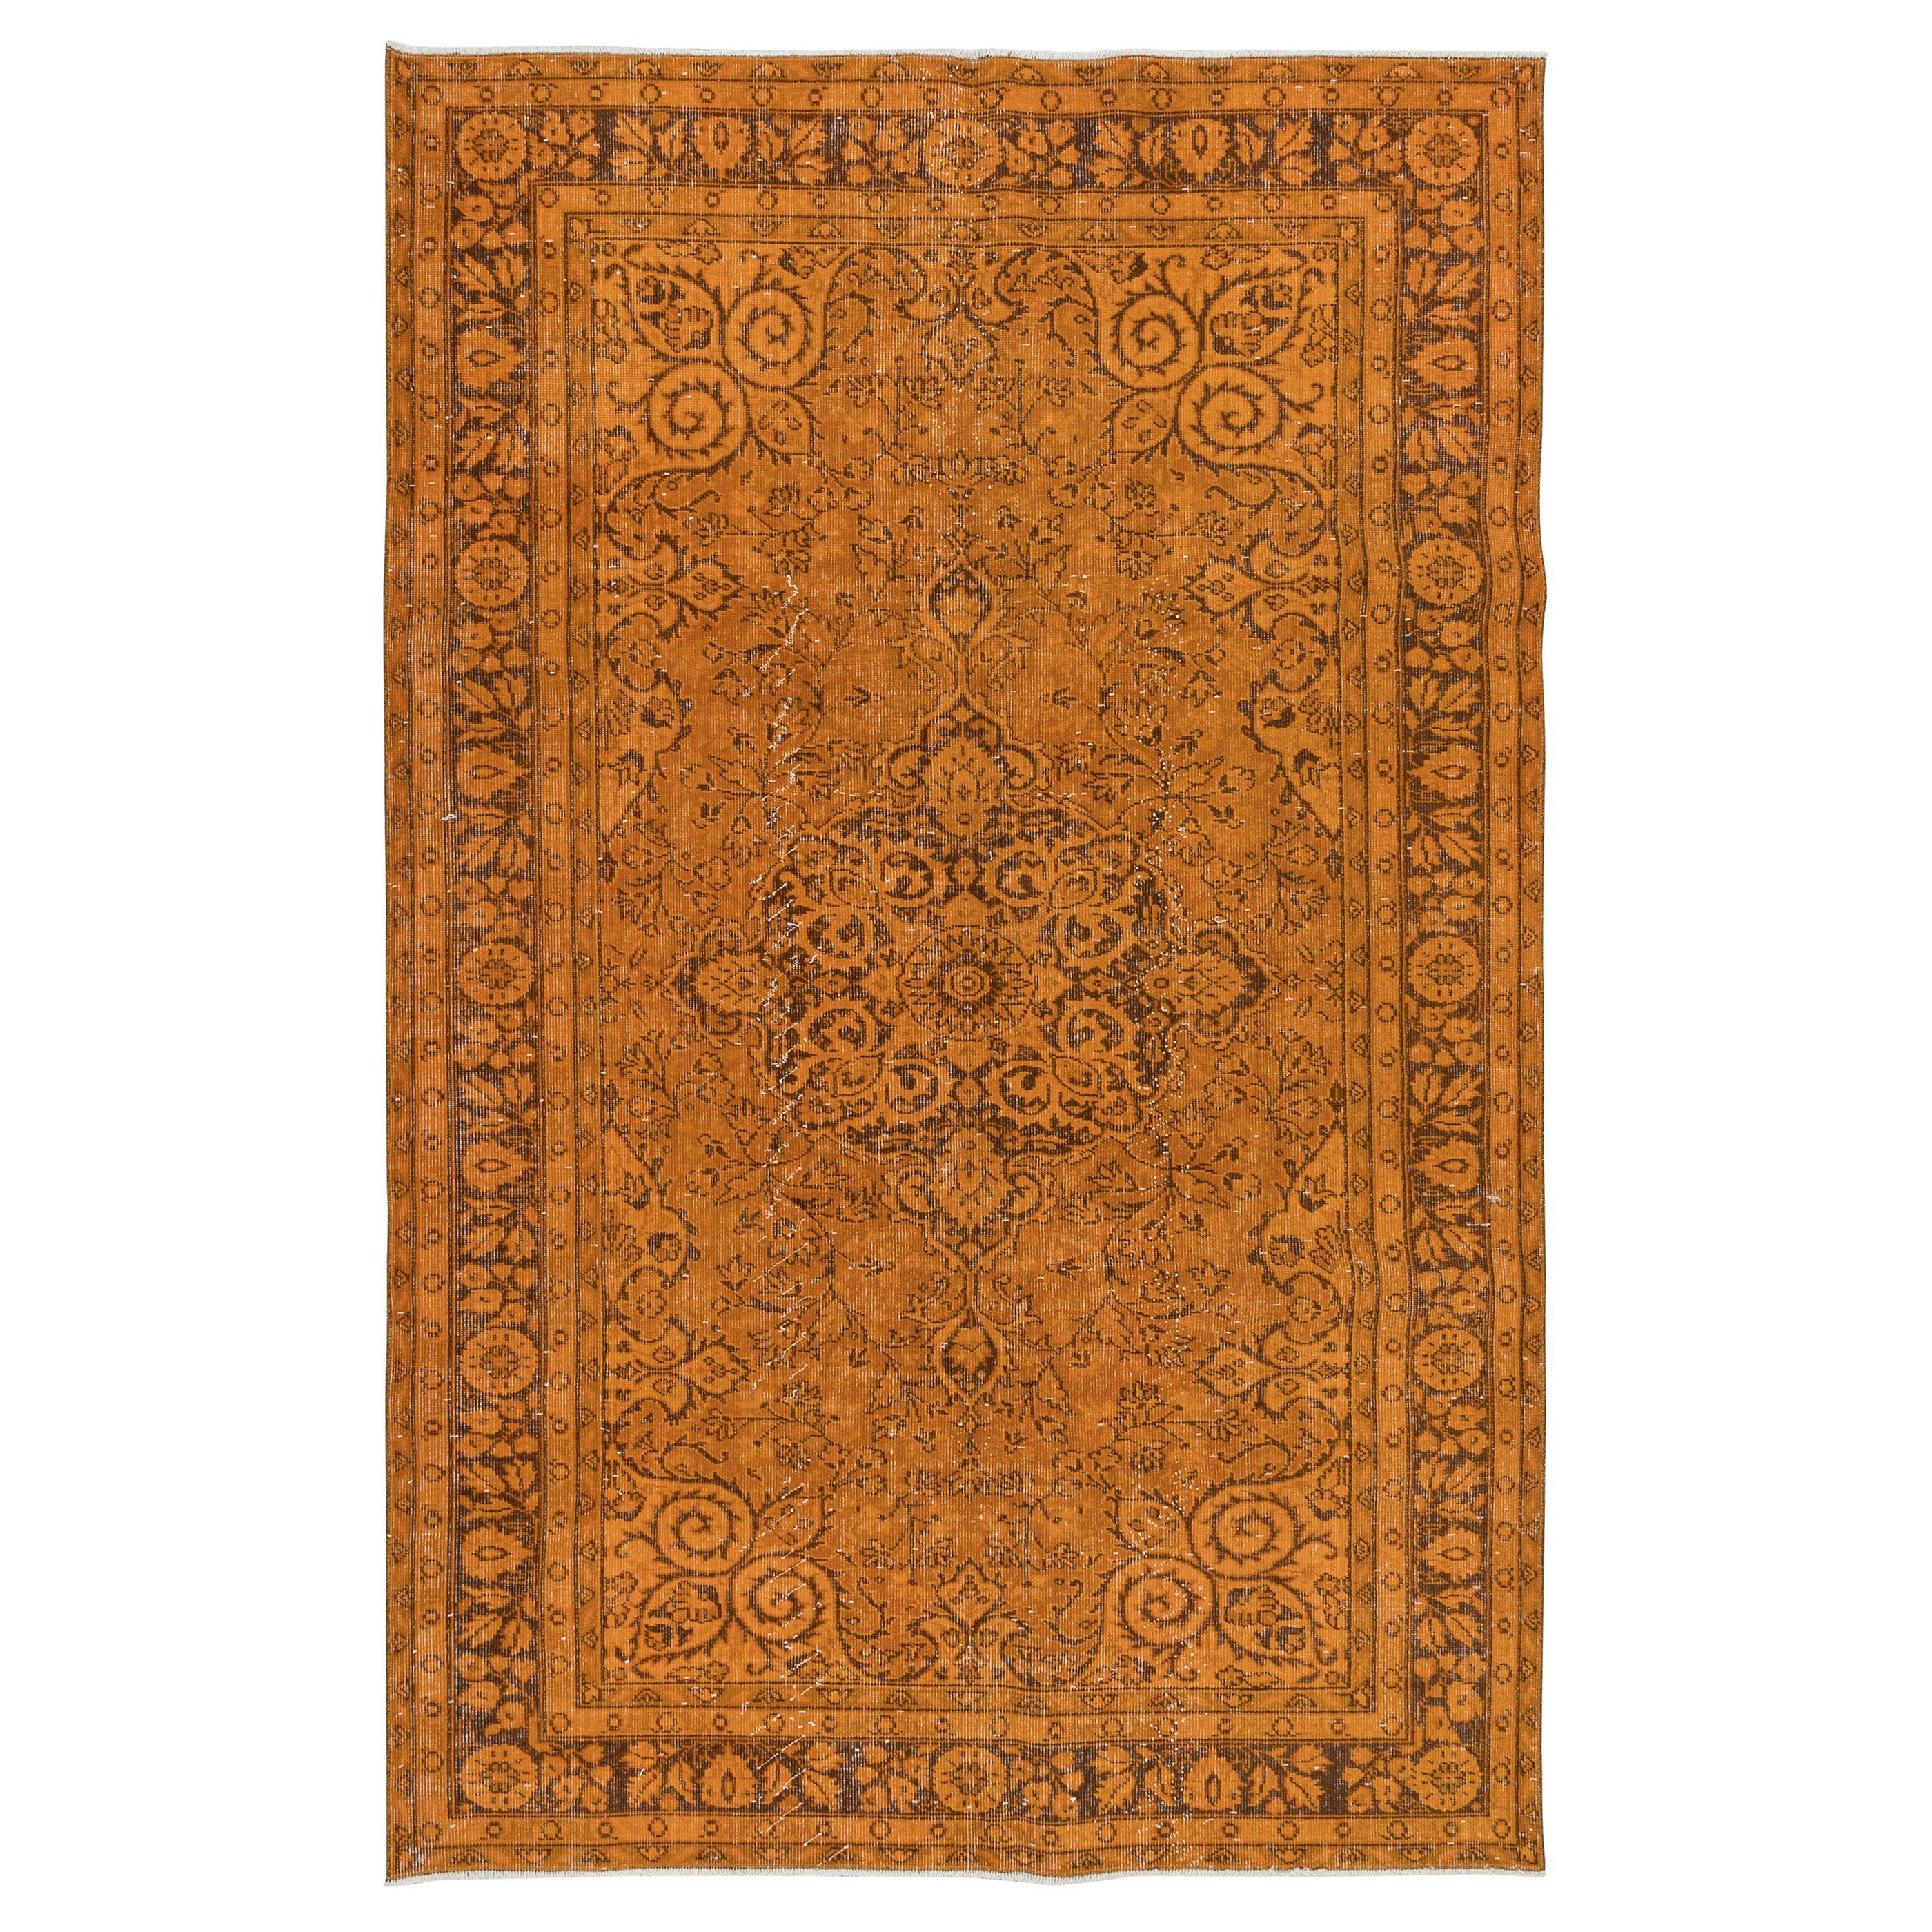 5.7x9 Ft Handgefertigter zentral- anatolischer Teppich in Orange, moderner Wollteppich